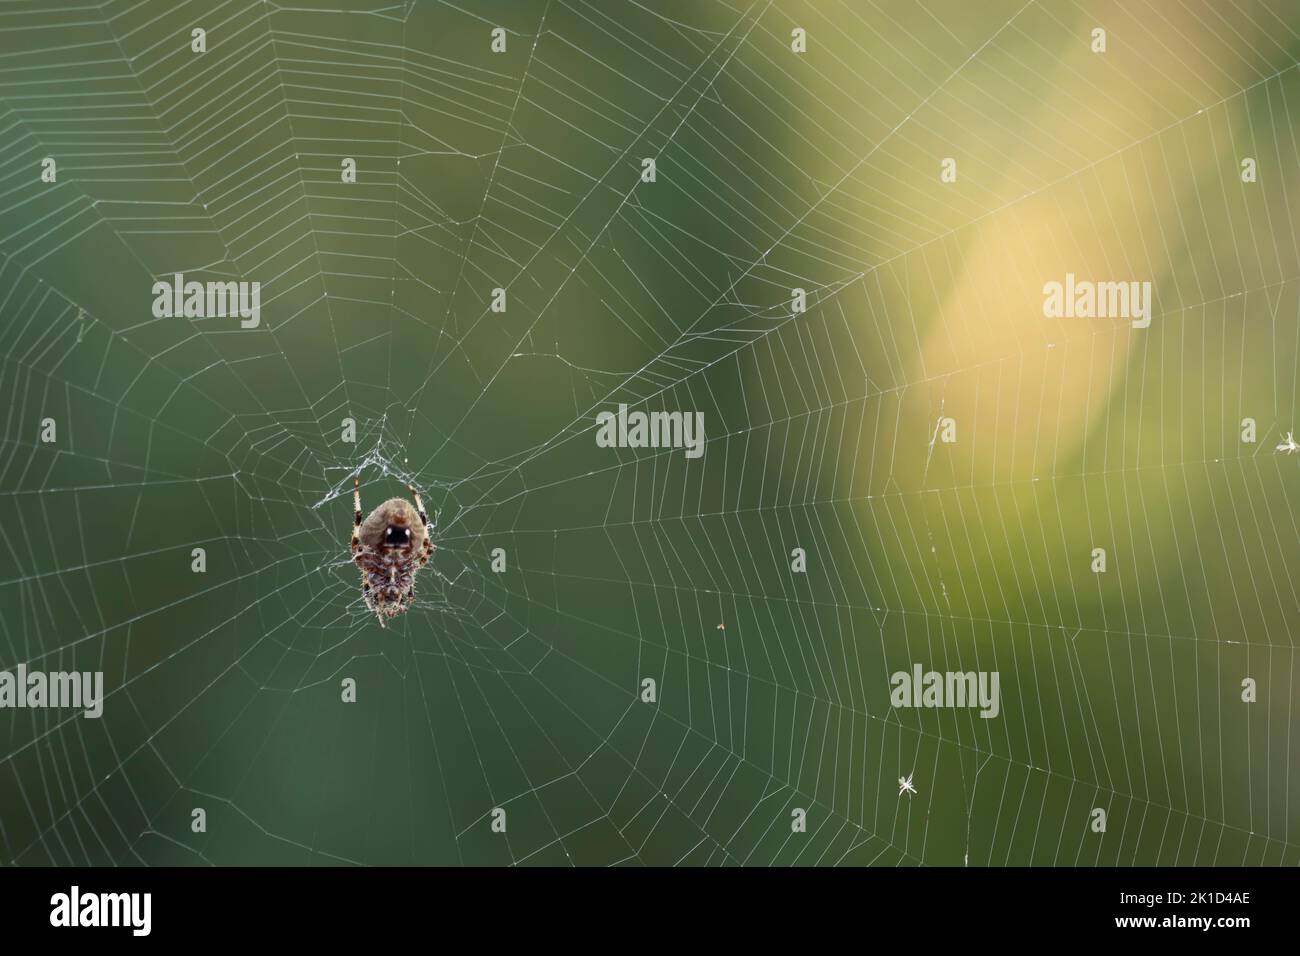 Araña tejedora de orbweaver hembra de Hentz boca abajo en su tela a finales del verano. Estas arañas son normalmente nocturnas, pero cambian a diurnas a finales del verano. Foto de stock